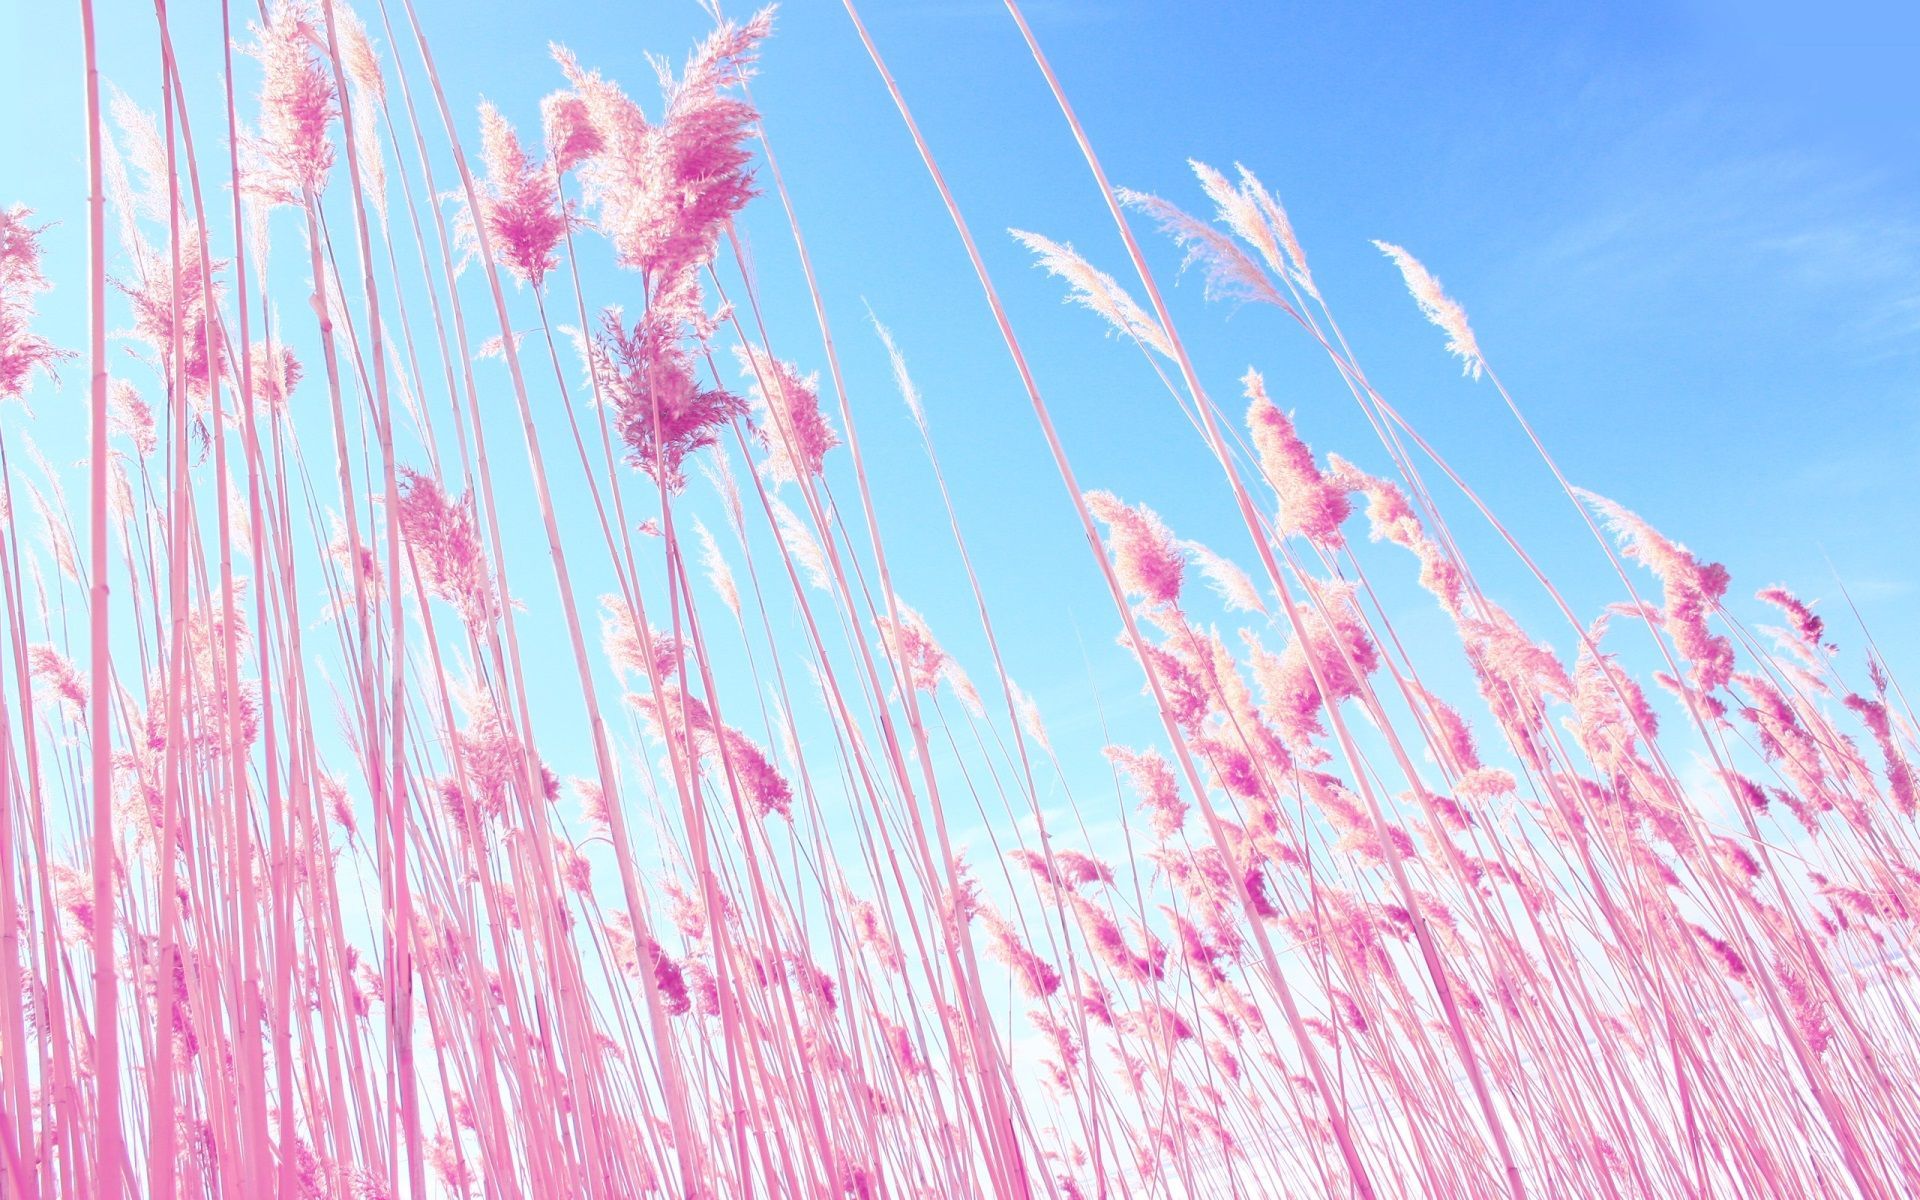 grass download HD wallpaper high resolution. Pink grass, Field wallpaper, Phone wallpaper